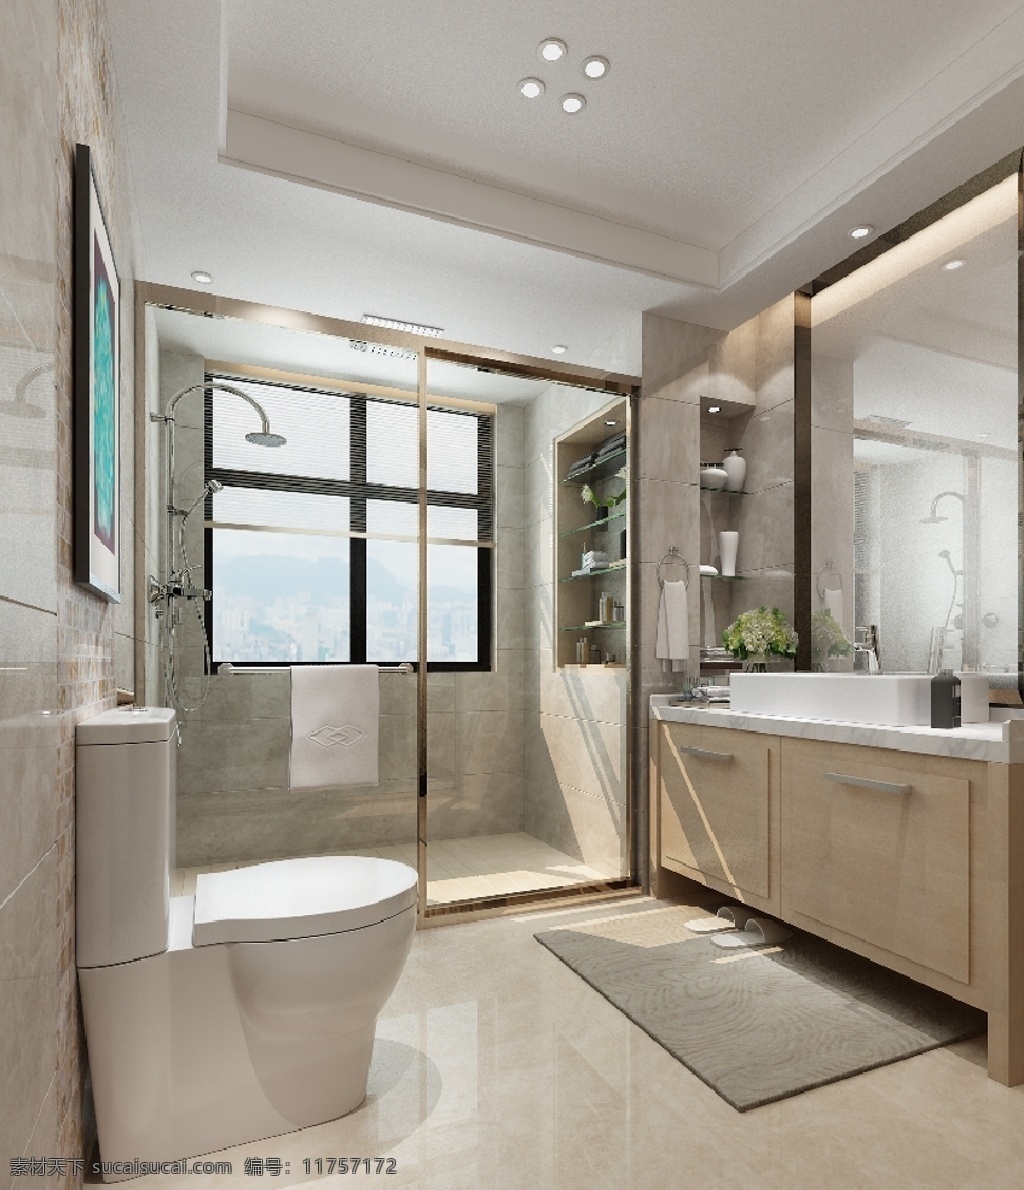 浴室 室内 设计图 室内设计 3dsmax 马桶 镜子 源文件 3d设计 室内模型 max